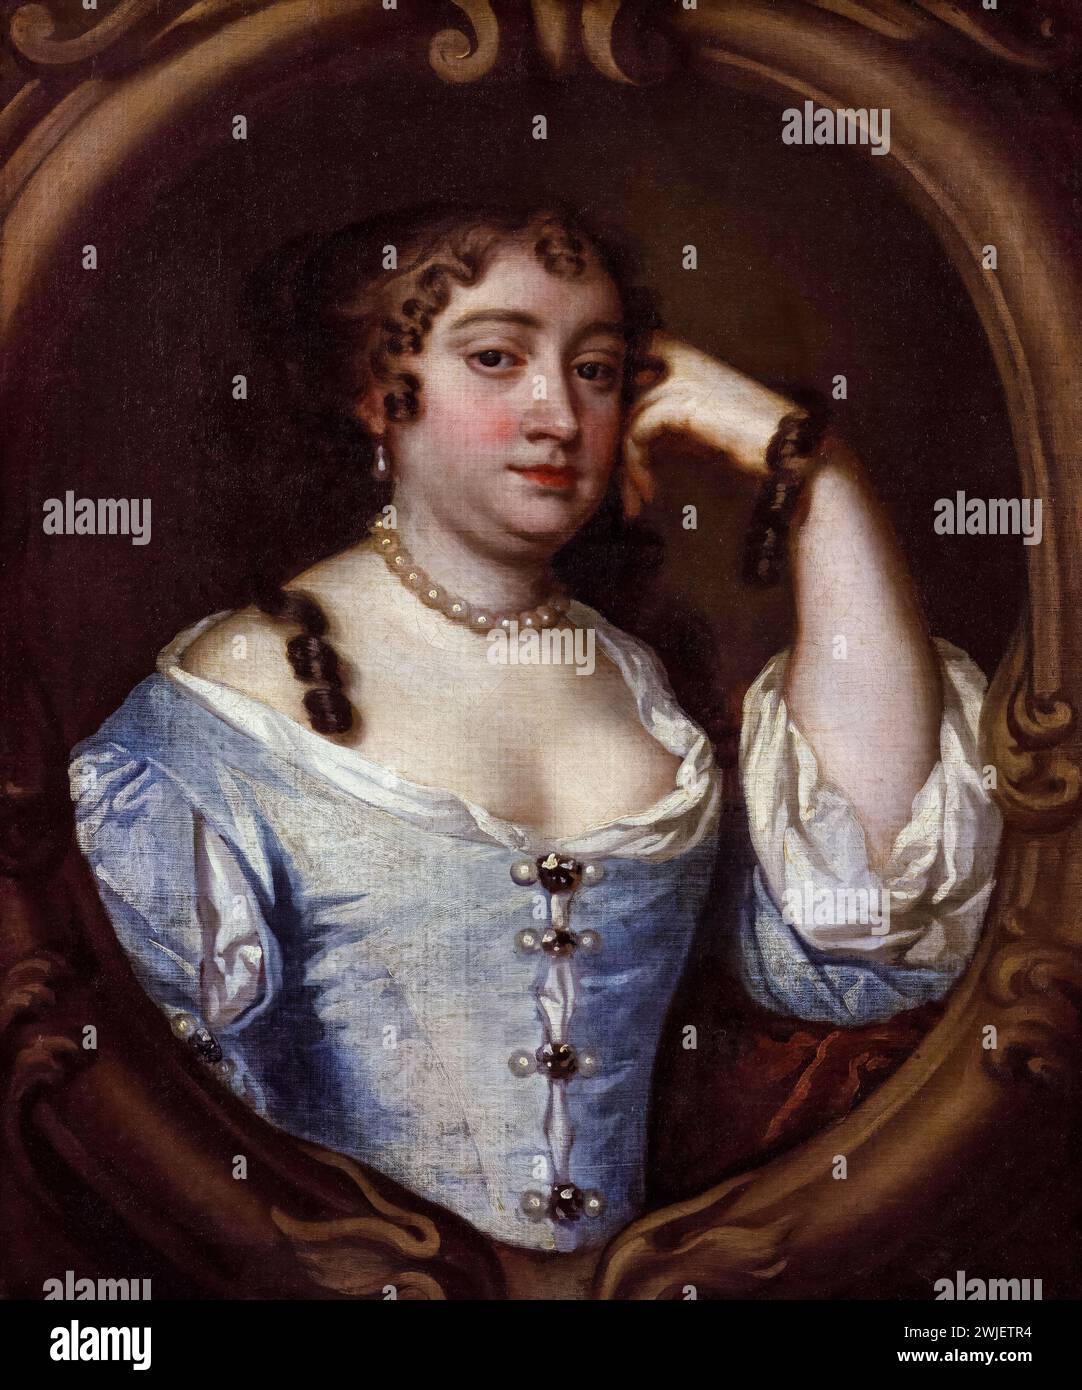 Anne Hyde (1637-1671), duchessa di York. Prima moglie di re Giacomo II e VII, ritratto a olio su tela dopo Sir Peter Lely, intorno al 1670 Foto Stock